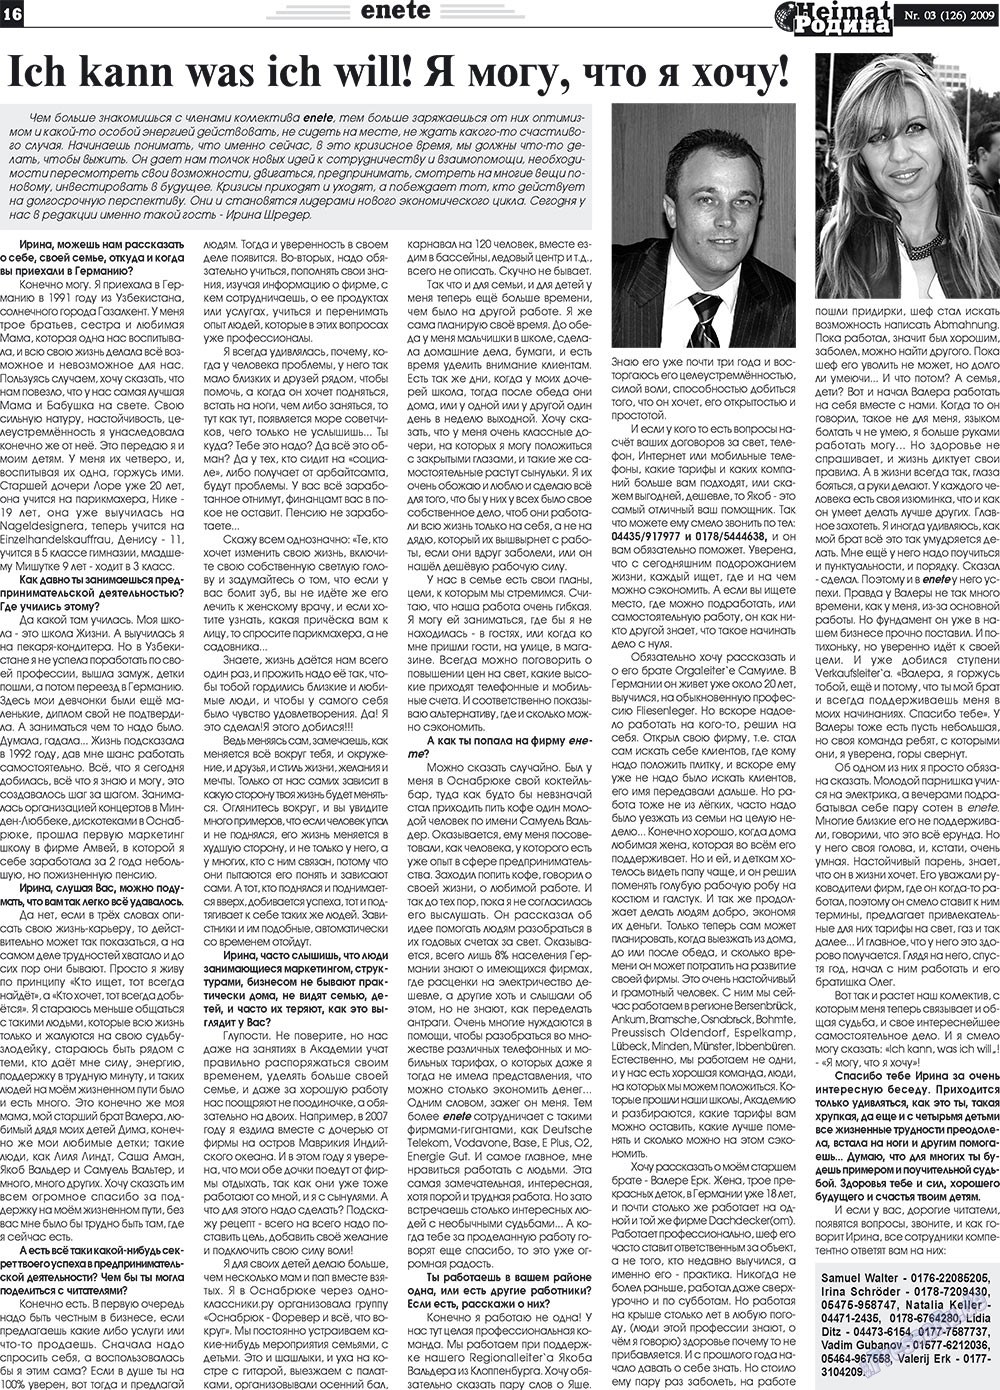 Heimat-Родина (газета). 2009 год, номер 3, стр. 16